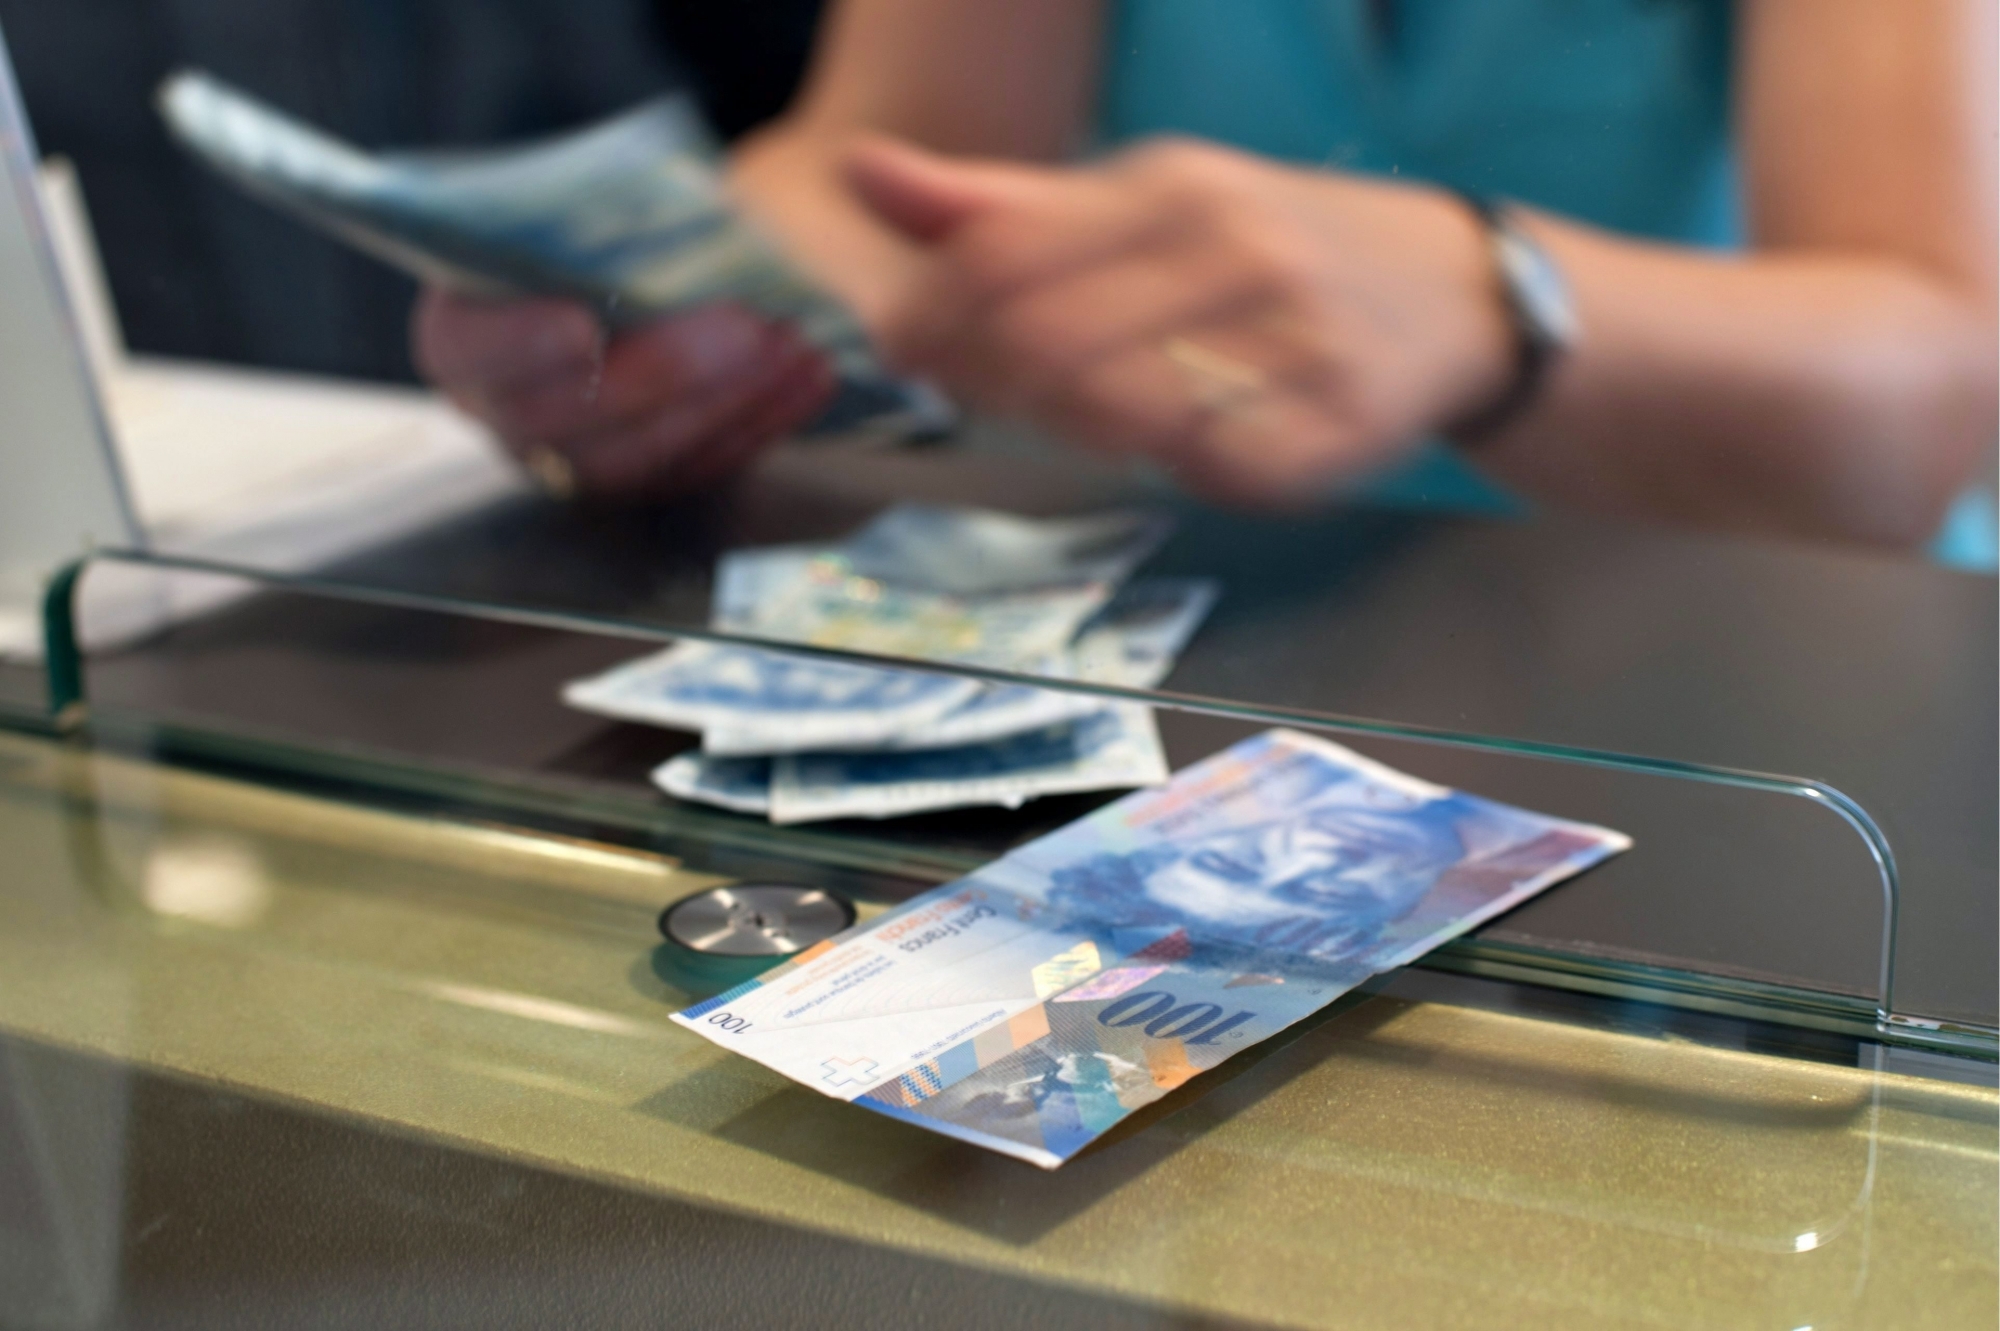 Les banques et les bureaux de change ne sont plus les seuls moyens de transférer son salaire en francs suisses sur un compte en euros. De nouveaux services en ligne proposent des transactions souvent moins chères.